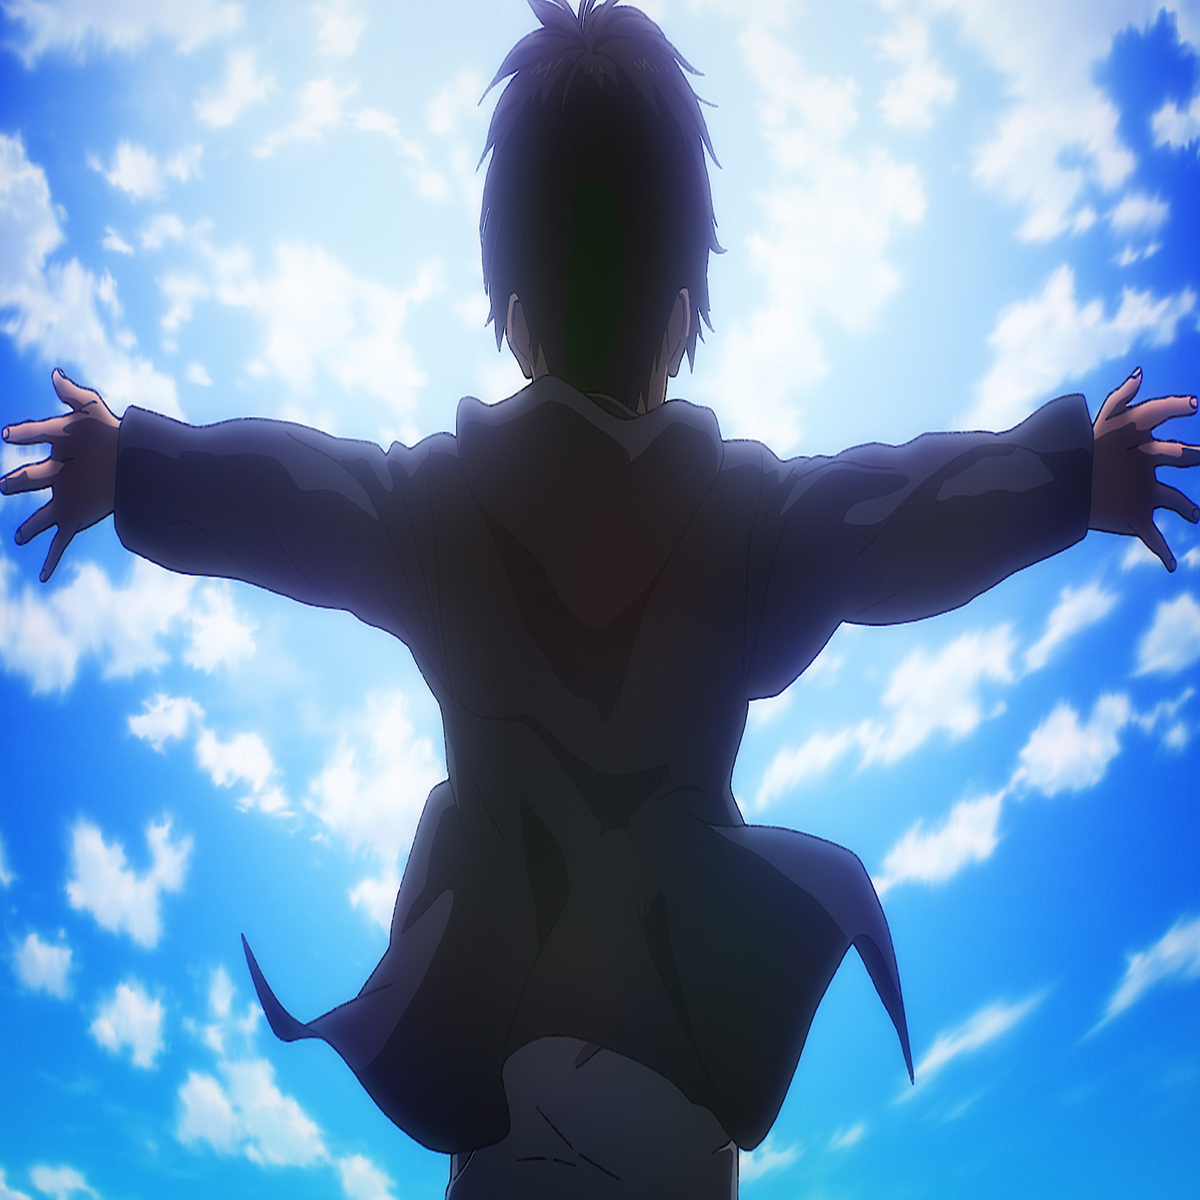 4 temporada de Shingeki no Kyojin será a última e será lançada em 2020